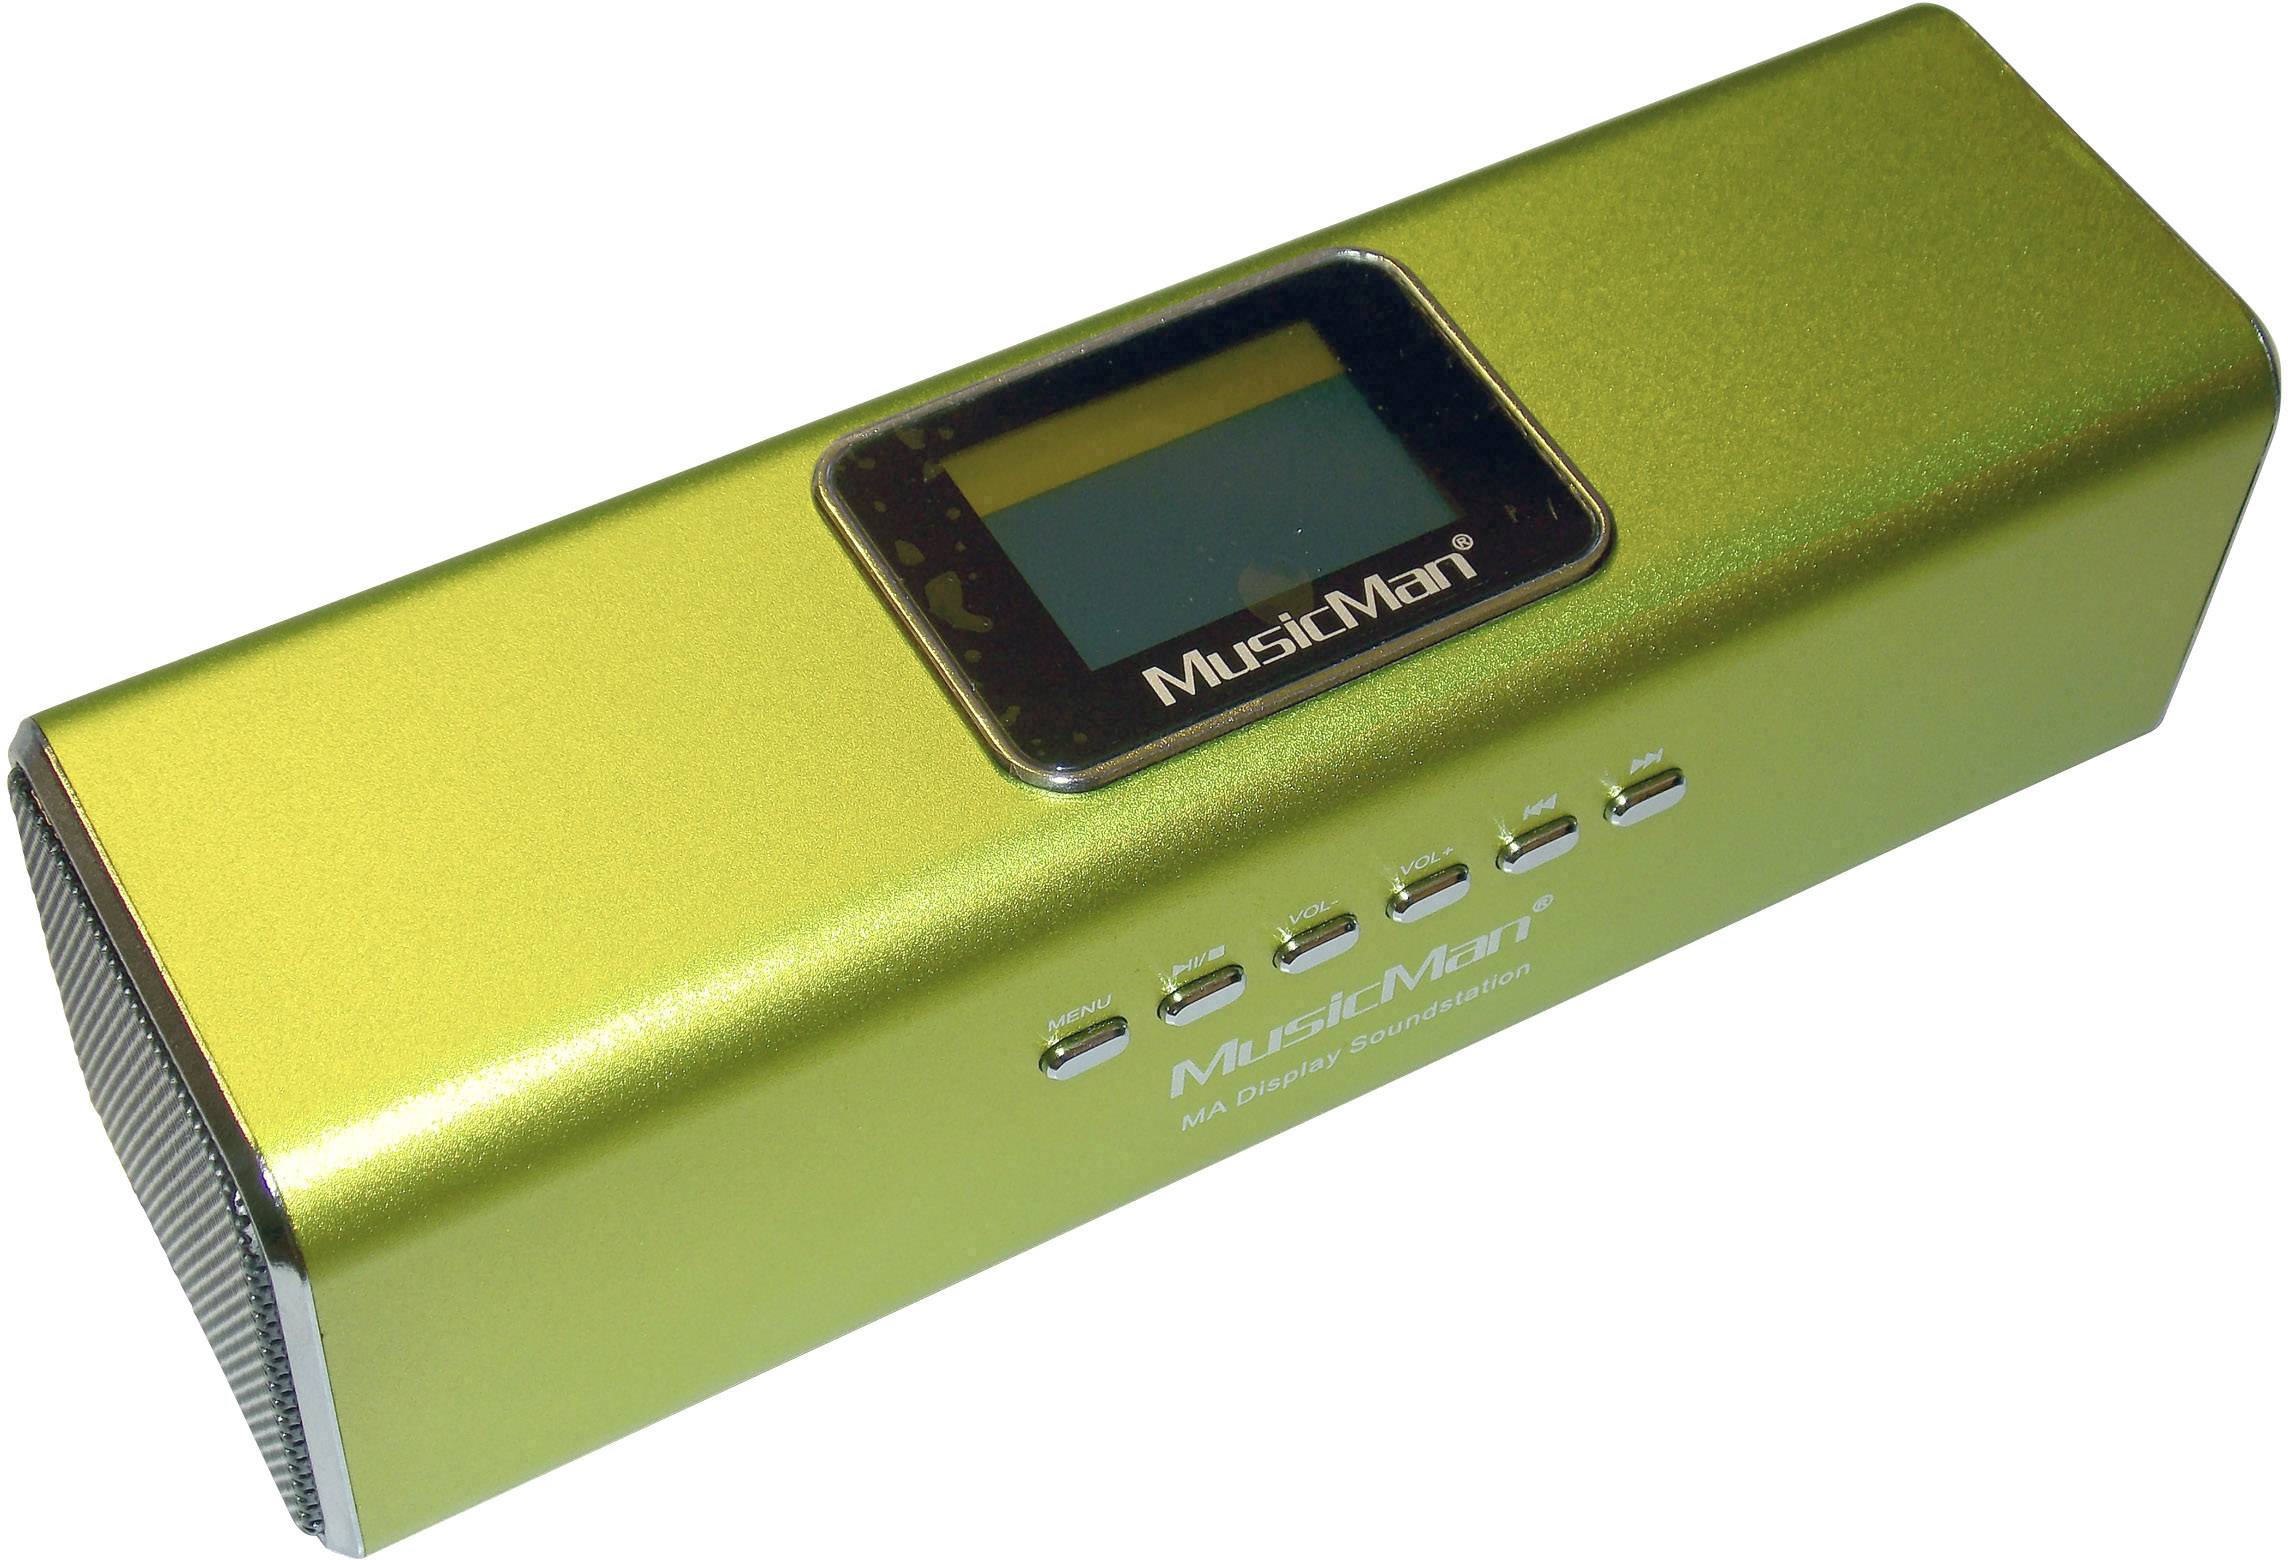 Technaxx MusicMan Display Mini MA Soundstation Grün kaufen tragbar, AUX, SD, USB Radio, FM Lautsprecher